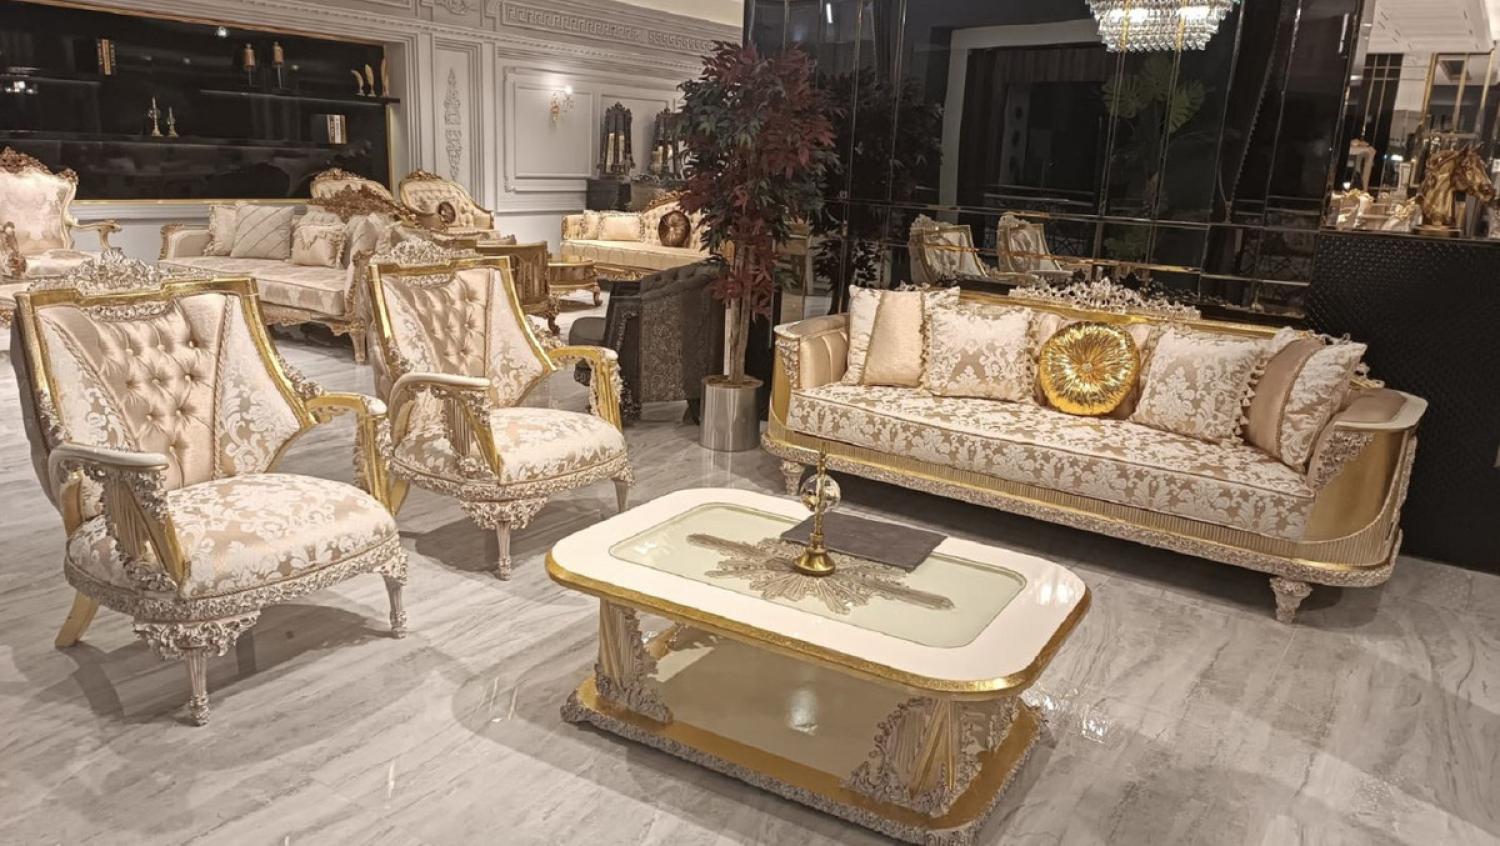 Casa Padrino Luxus Barock Wohnzimmer Set Gold / Weiß - 2 Barock Sofas & 2 Barock Sessel & 1 Barock Couchtisch - Luxus Wohnzimmer Möbel im Barockstil - Edel & Prunkvoll Bild 1